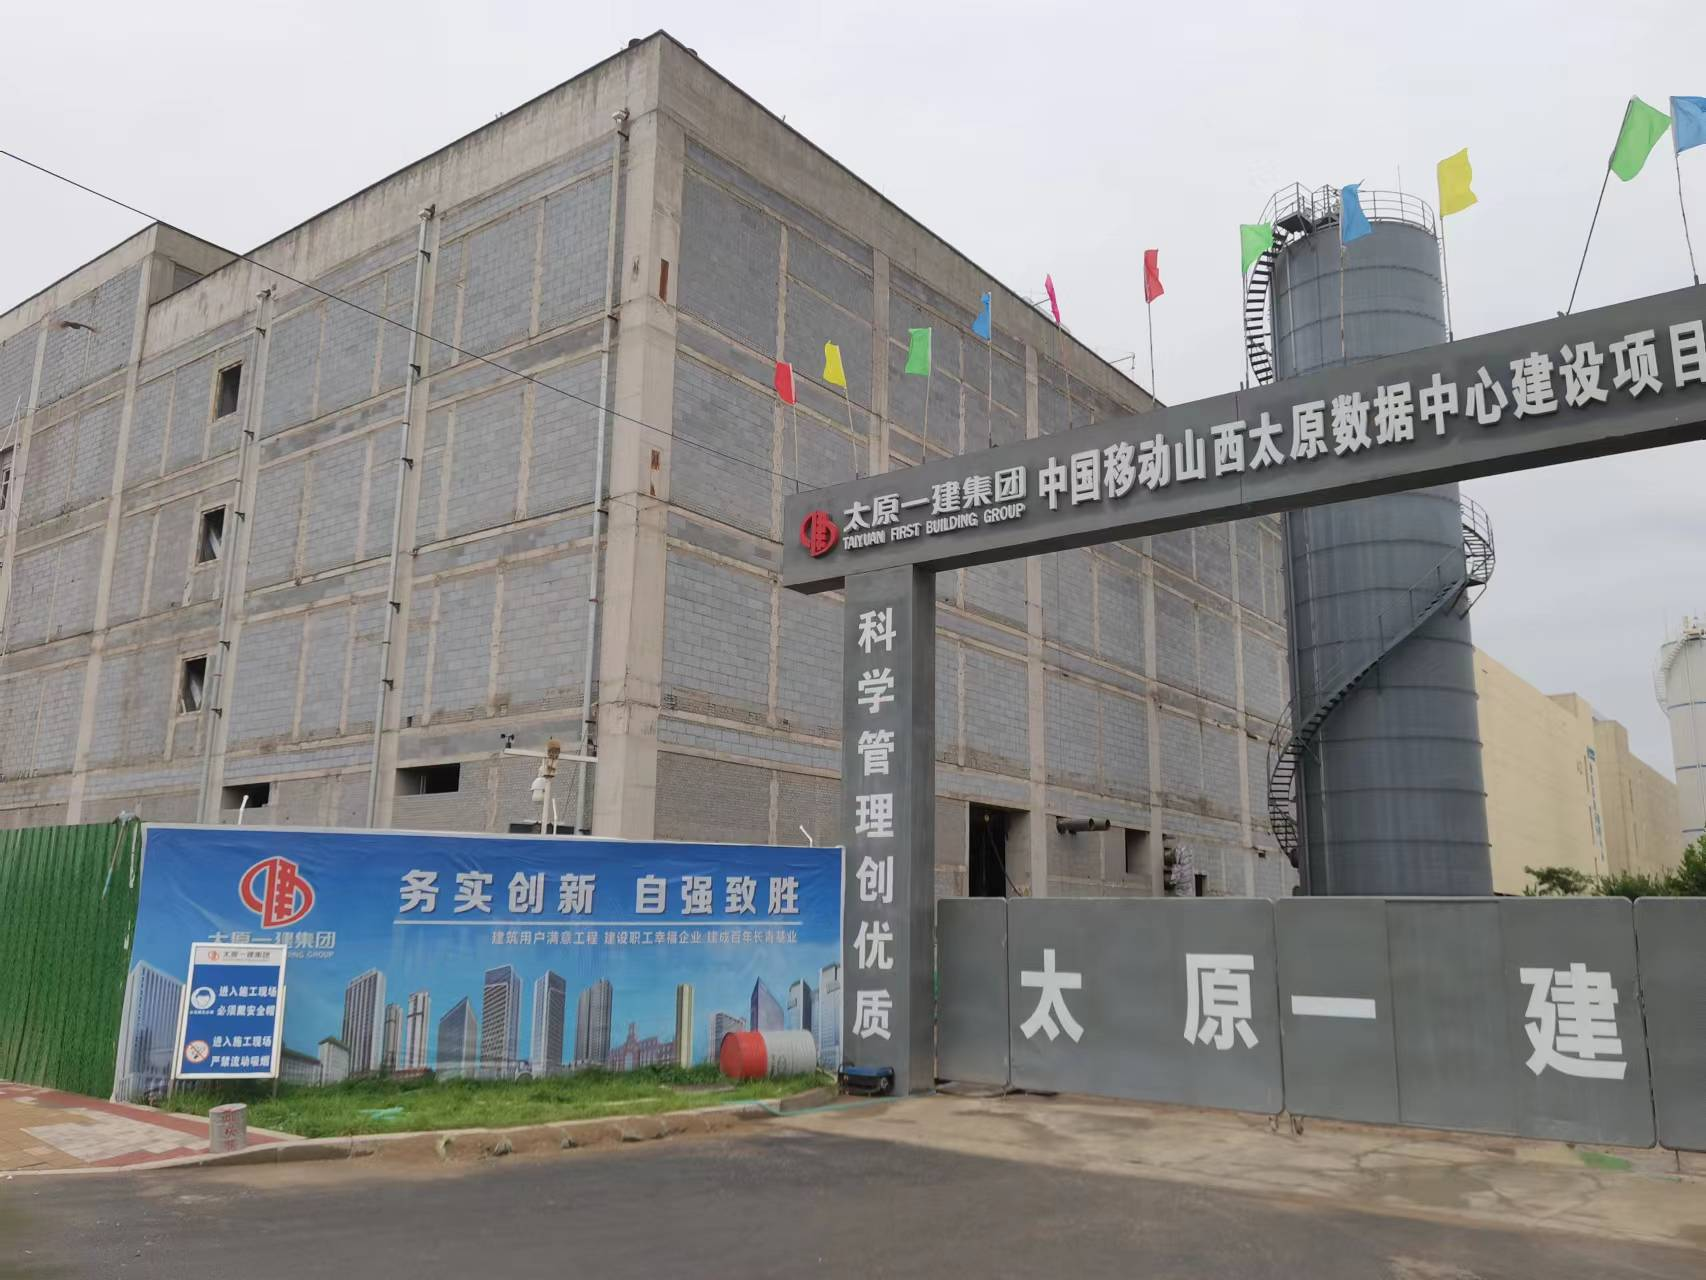 Taiyuan mobildatacenterprojekt